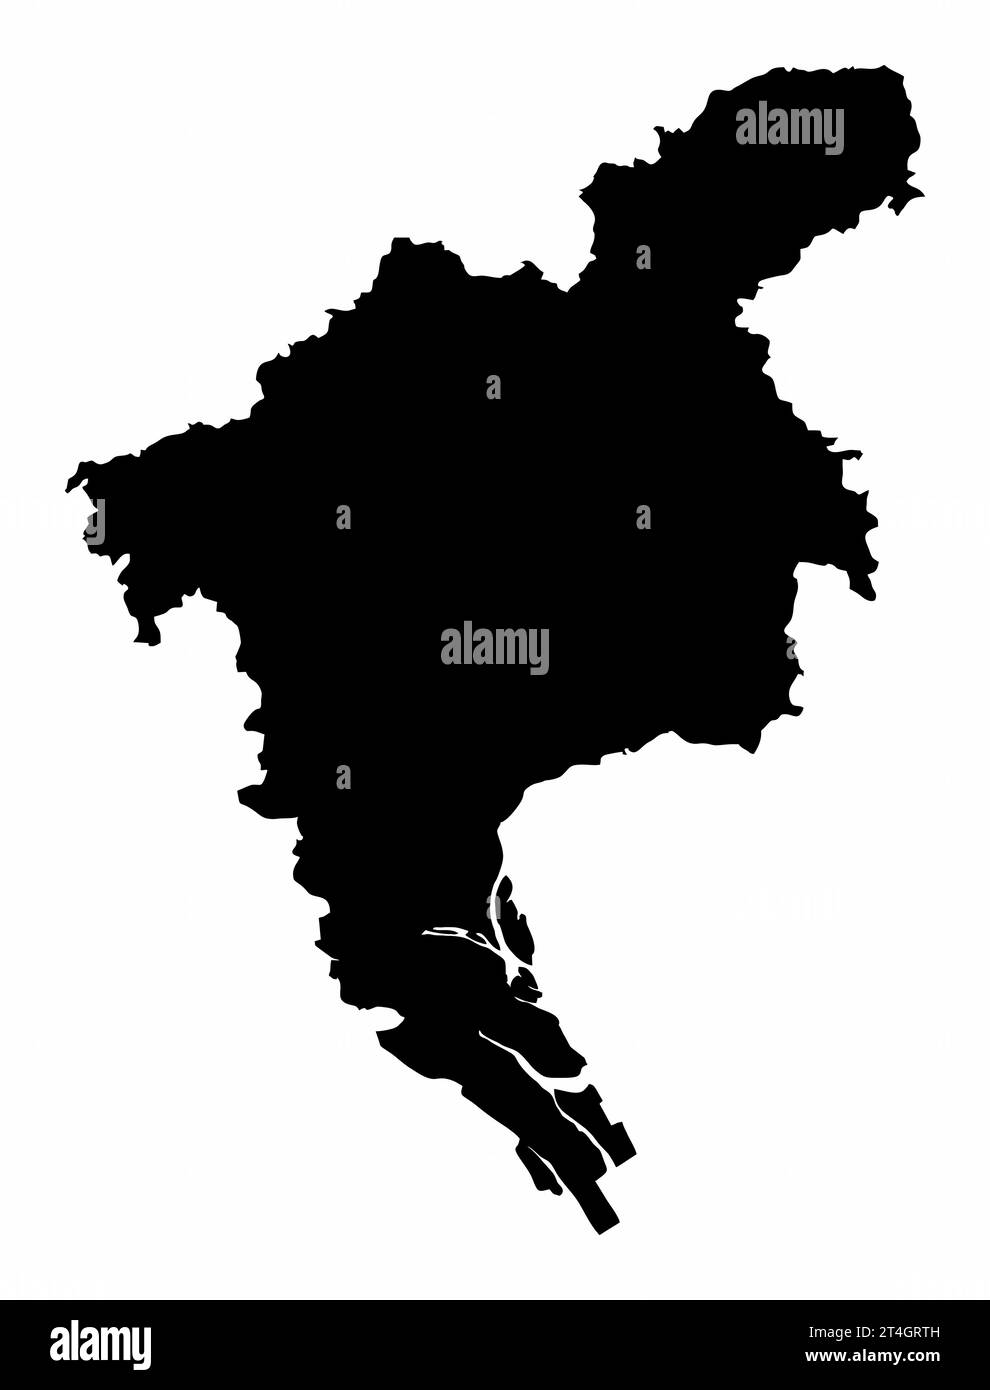 Silhouette de carte de ville de Guangzhou isolée sur fond blanc, Chine Illustration de Vecteur